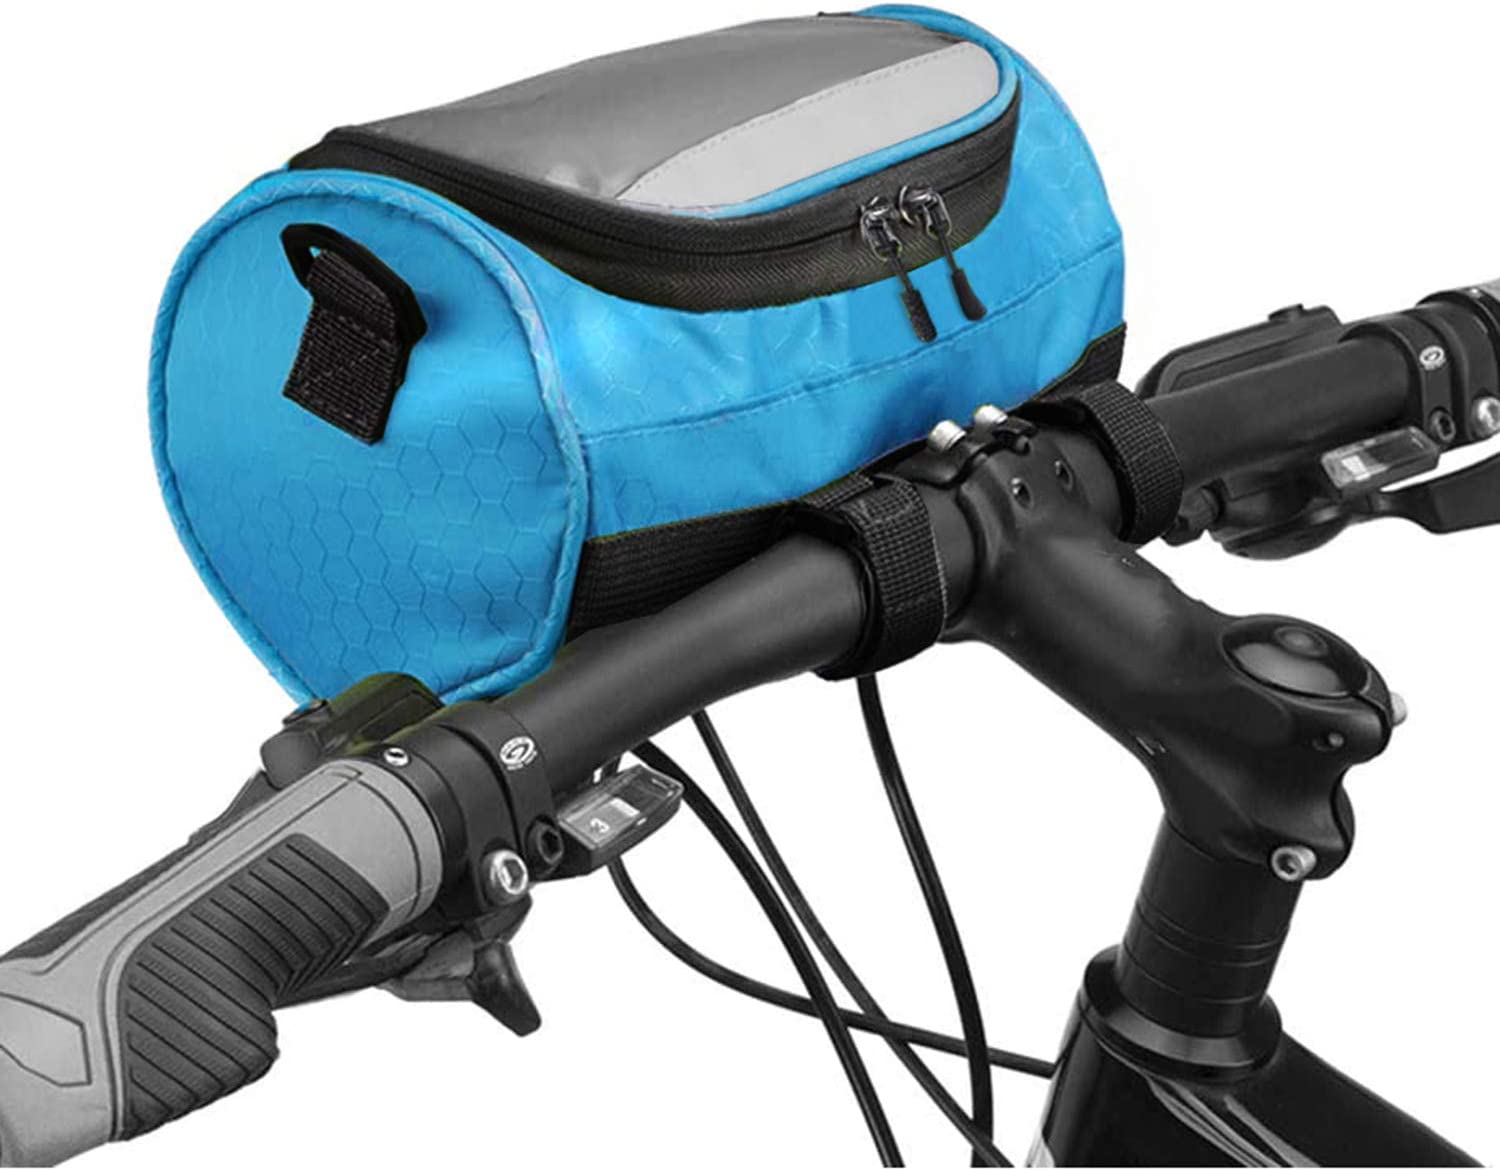 Fahrradlenkertasche für Rennräder, Mountainbikes und Motorräder.